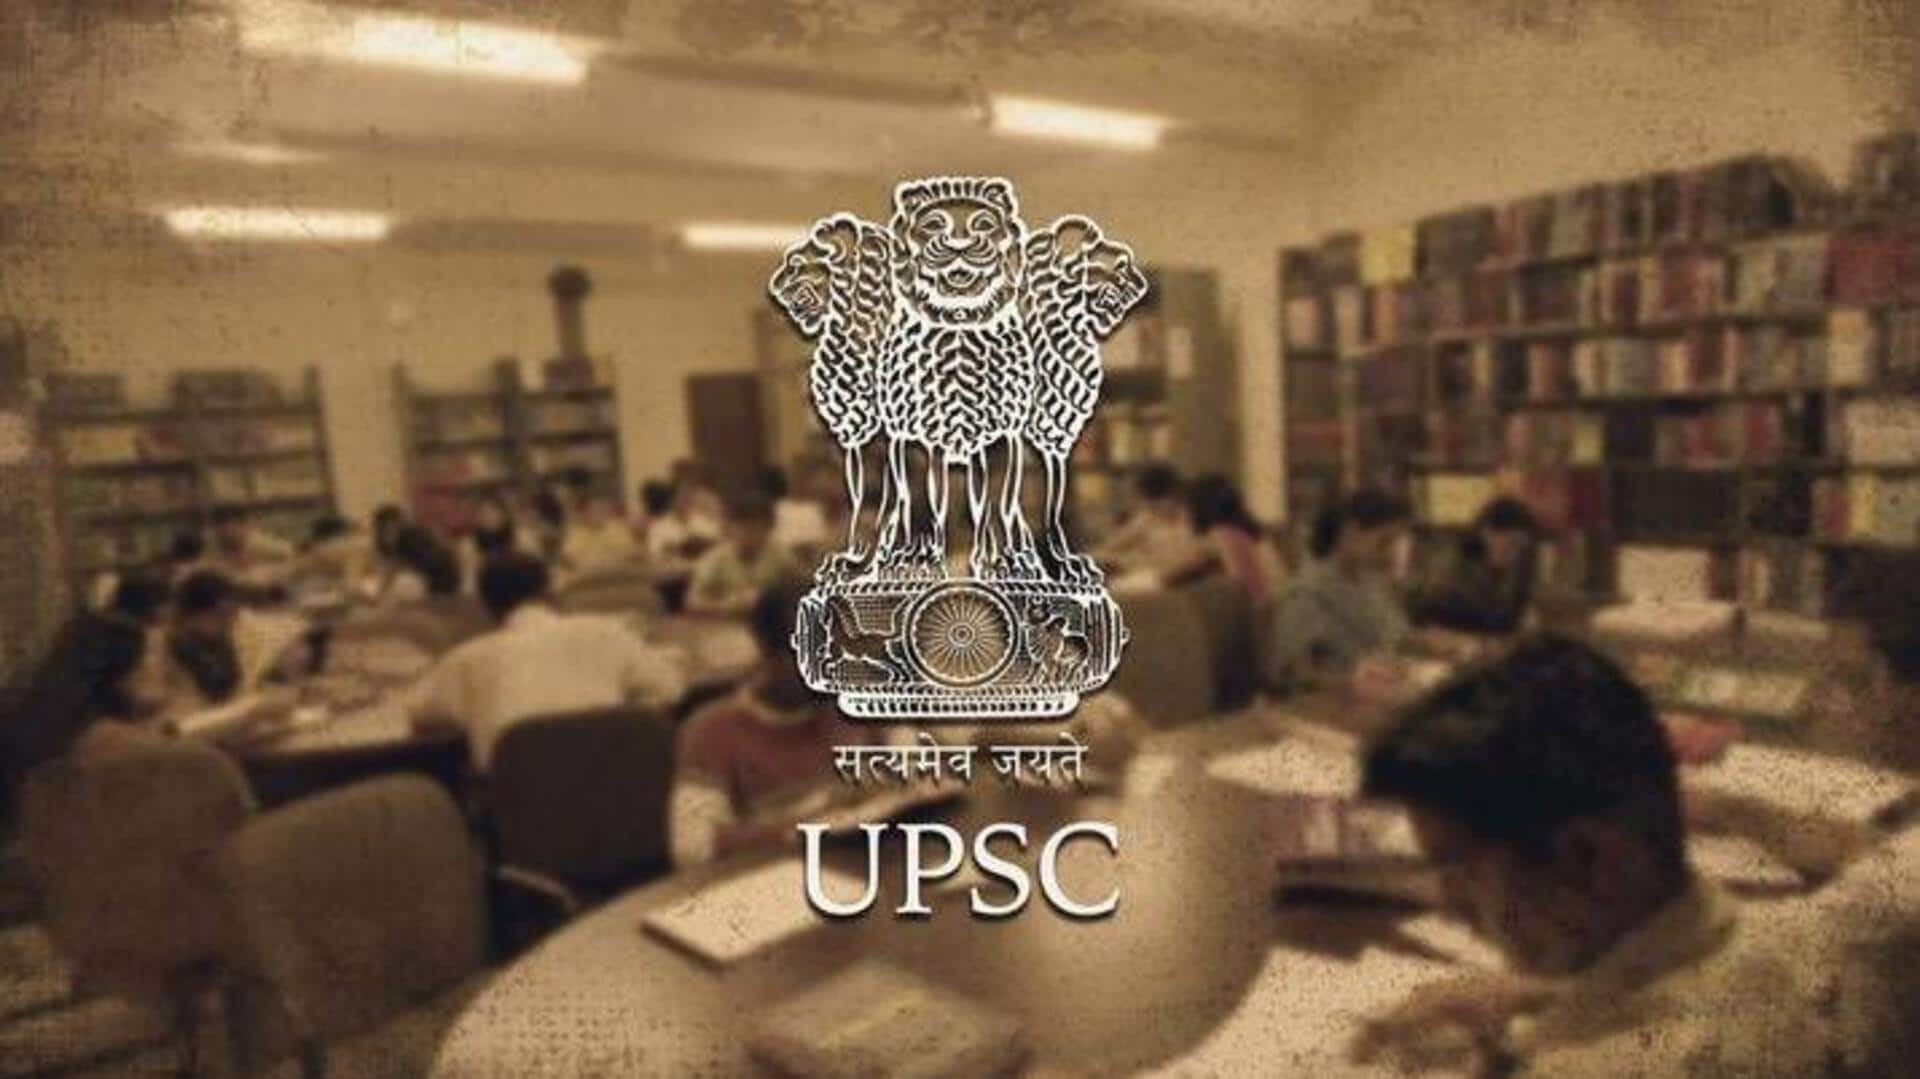 UPSC: प्रारंभिक और मुख्य परीक्षा के लिए भारतीय राज्यव्यवस्था का अध्ययन कैसे करें?